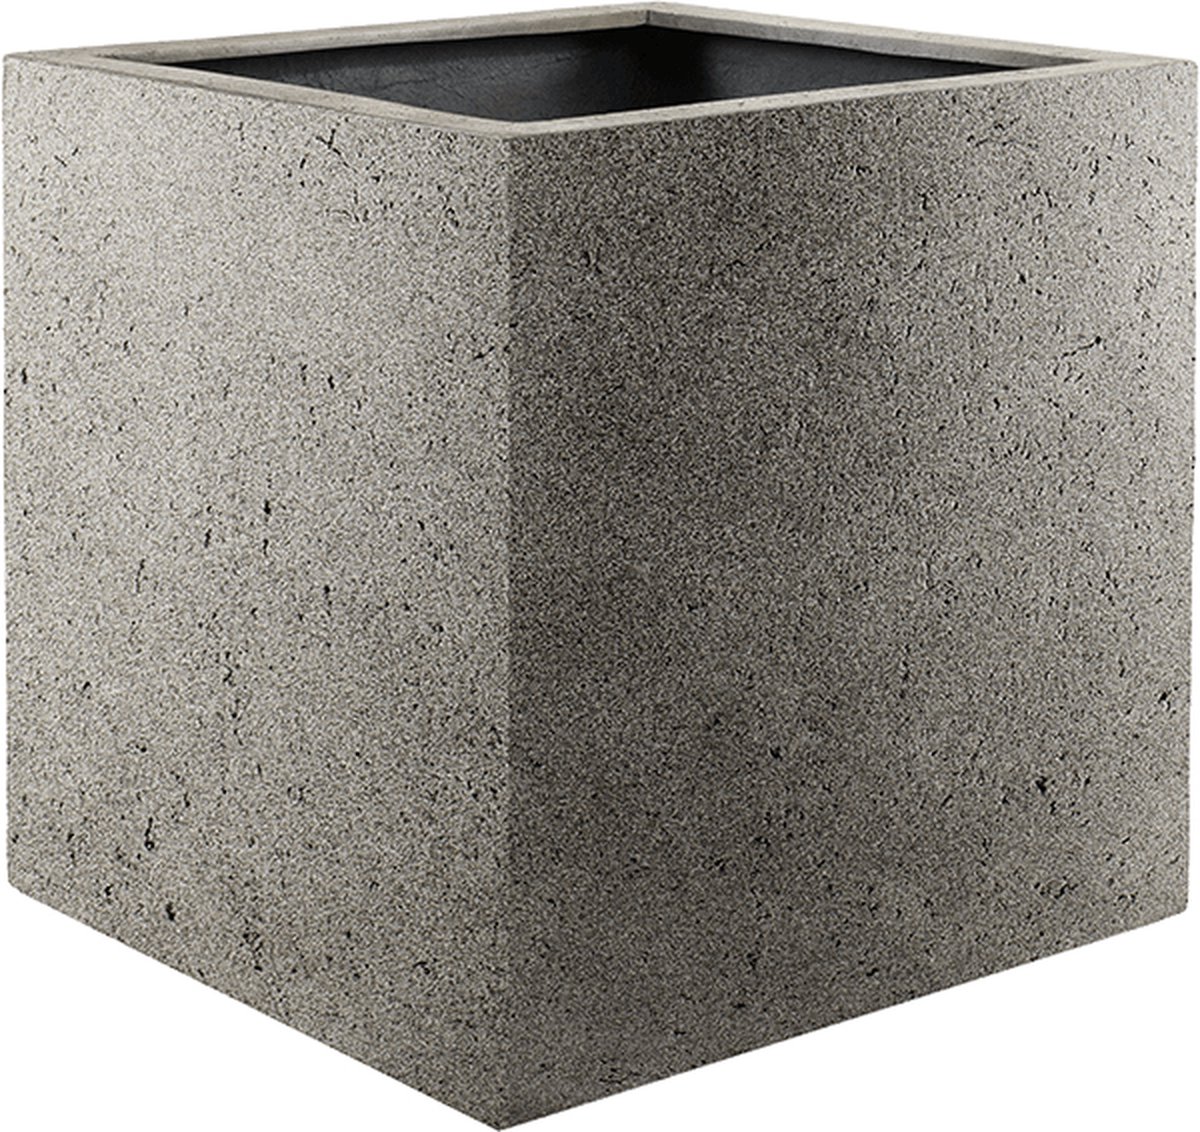 Luca Lifestyle Grigio Cube 80 Naturel Concrete